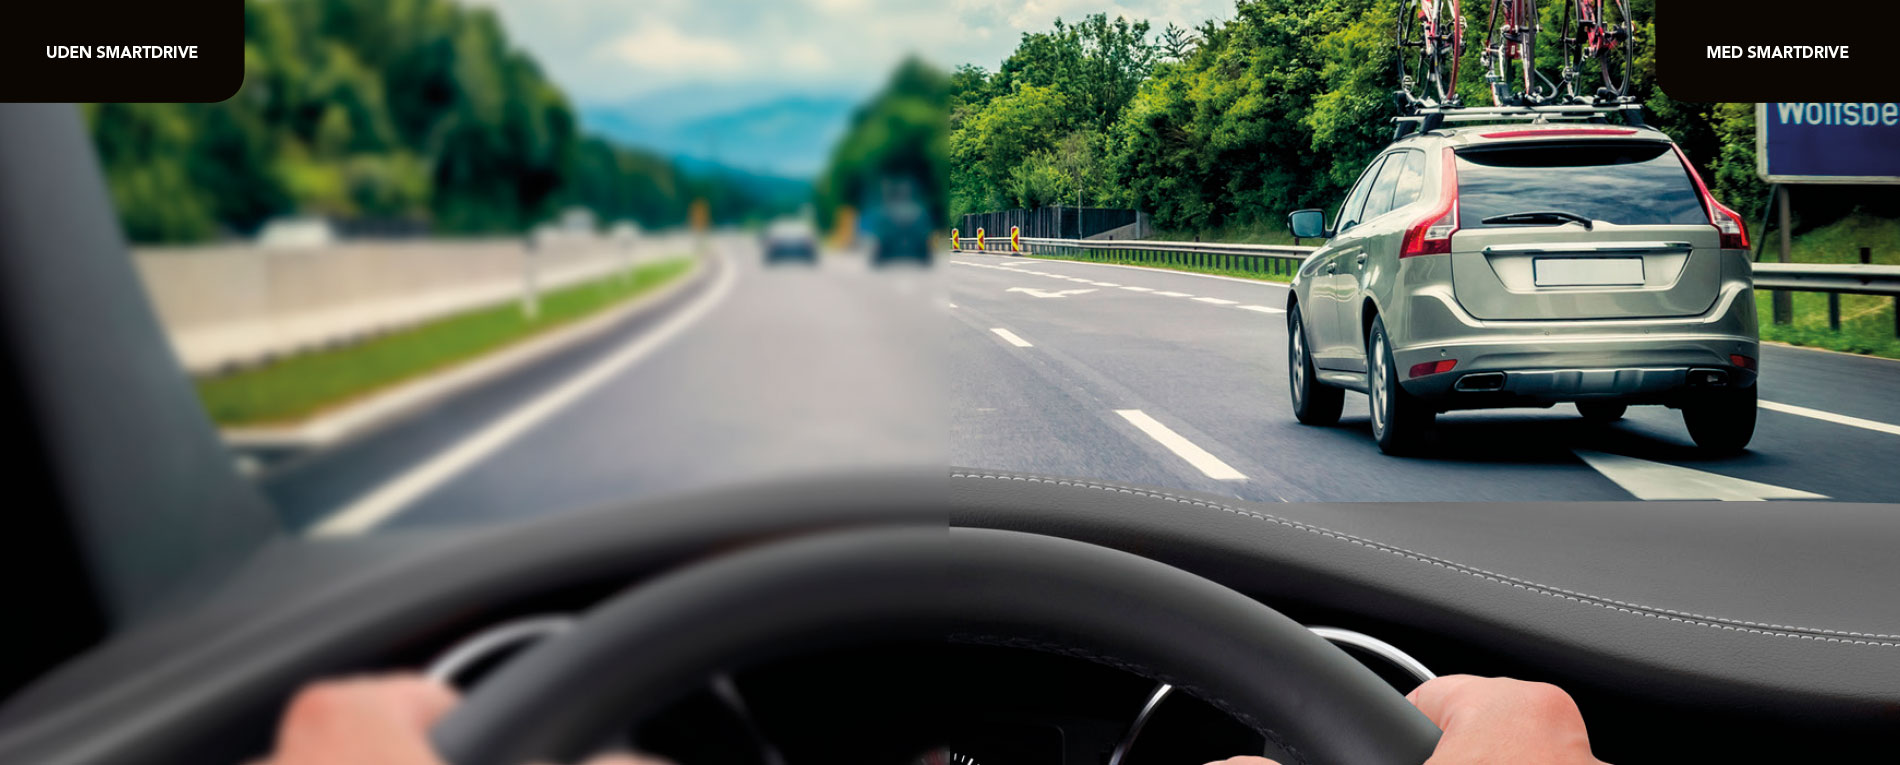 Øg din sikkerhed på vejen med kørebriller fra Smarteyes